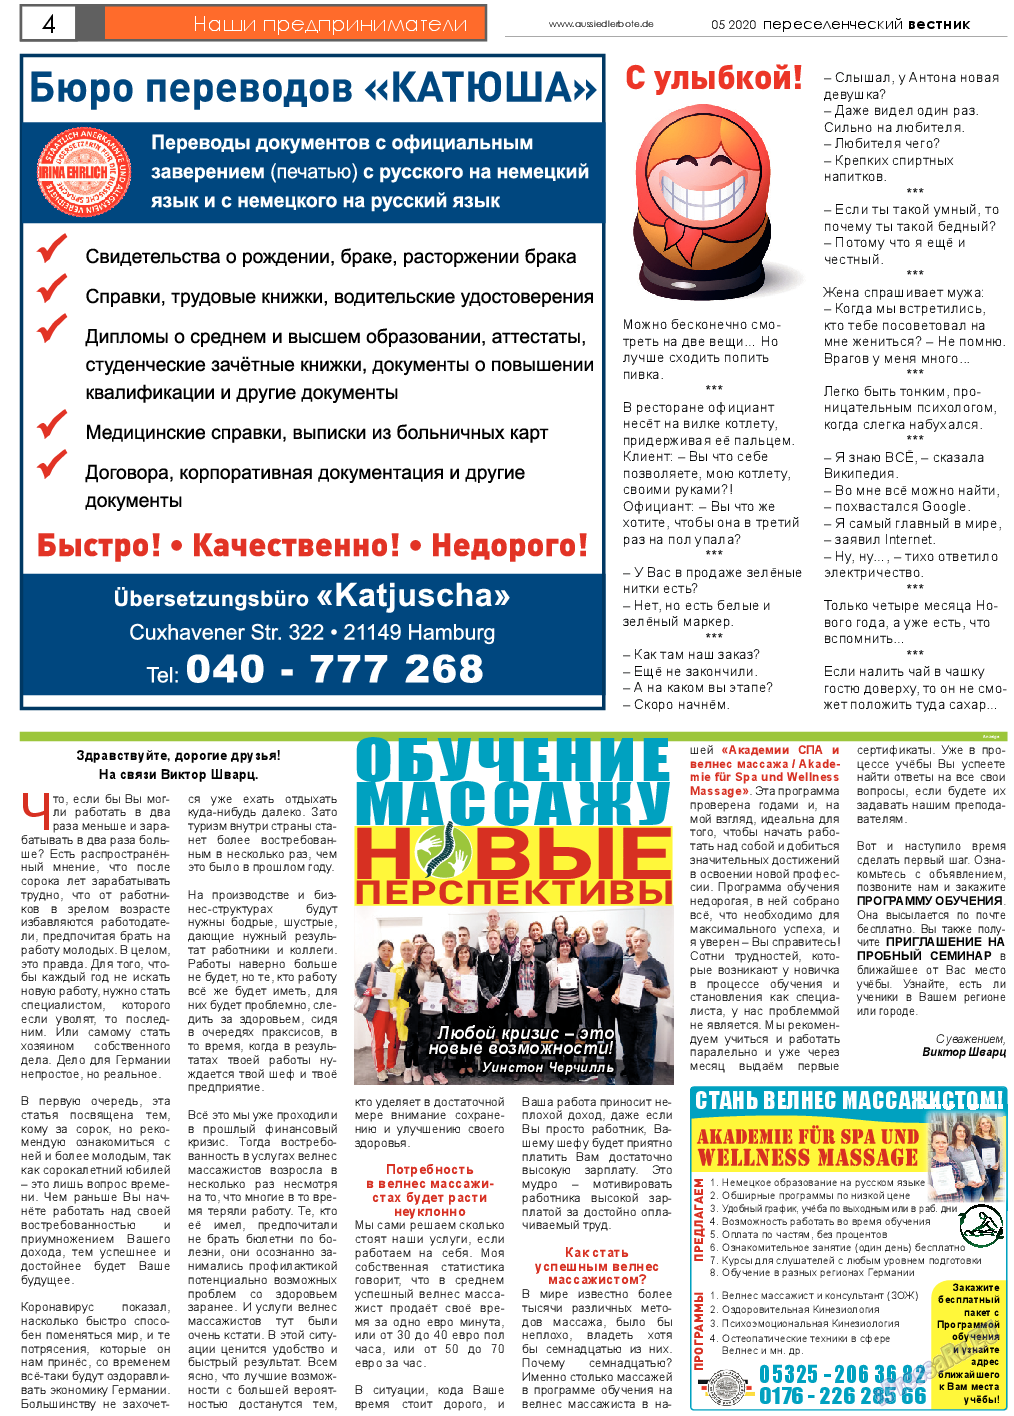 Переселенческий вестник, газета. 2020 №5 стр.4